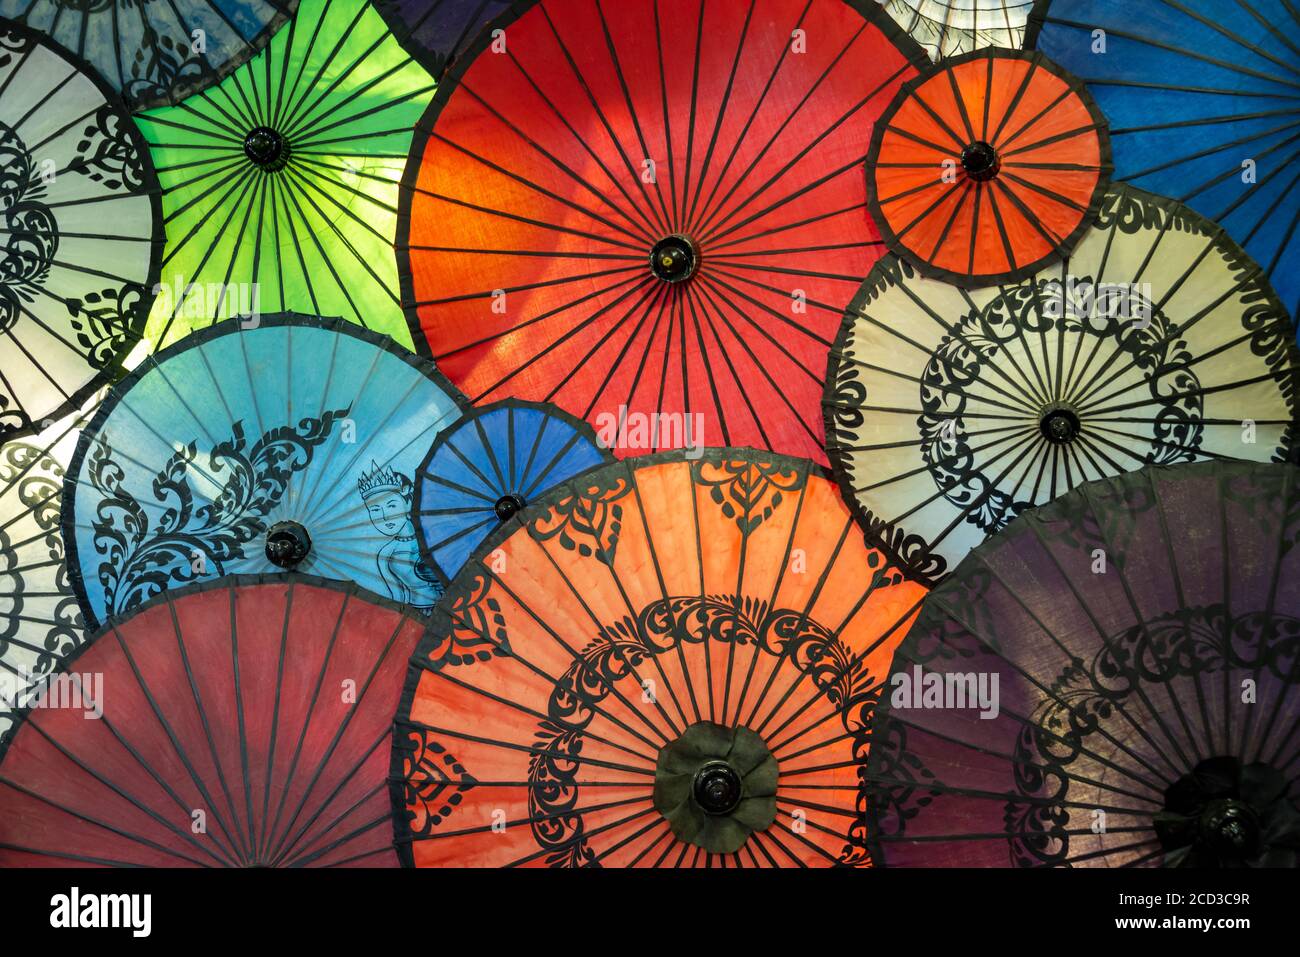 Exposition de parasols colorés en Birmanie, au Myanmar Banque D'Images